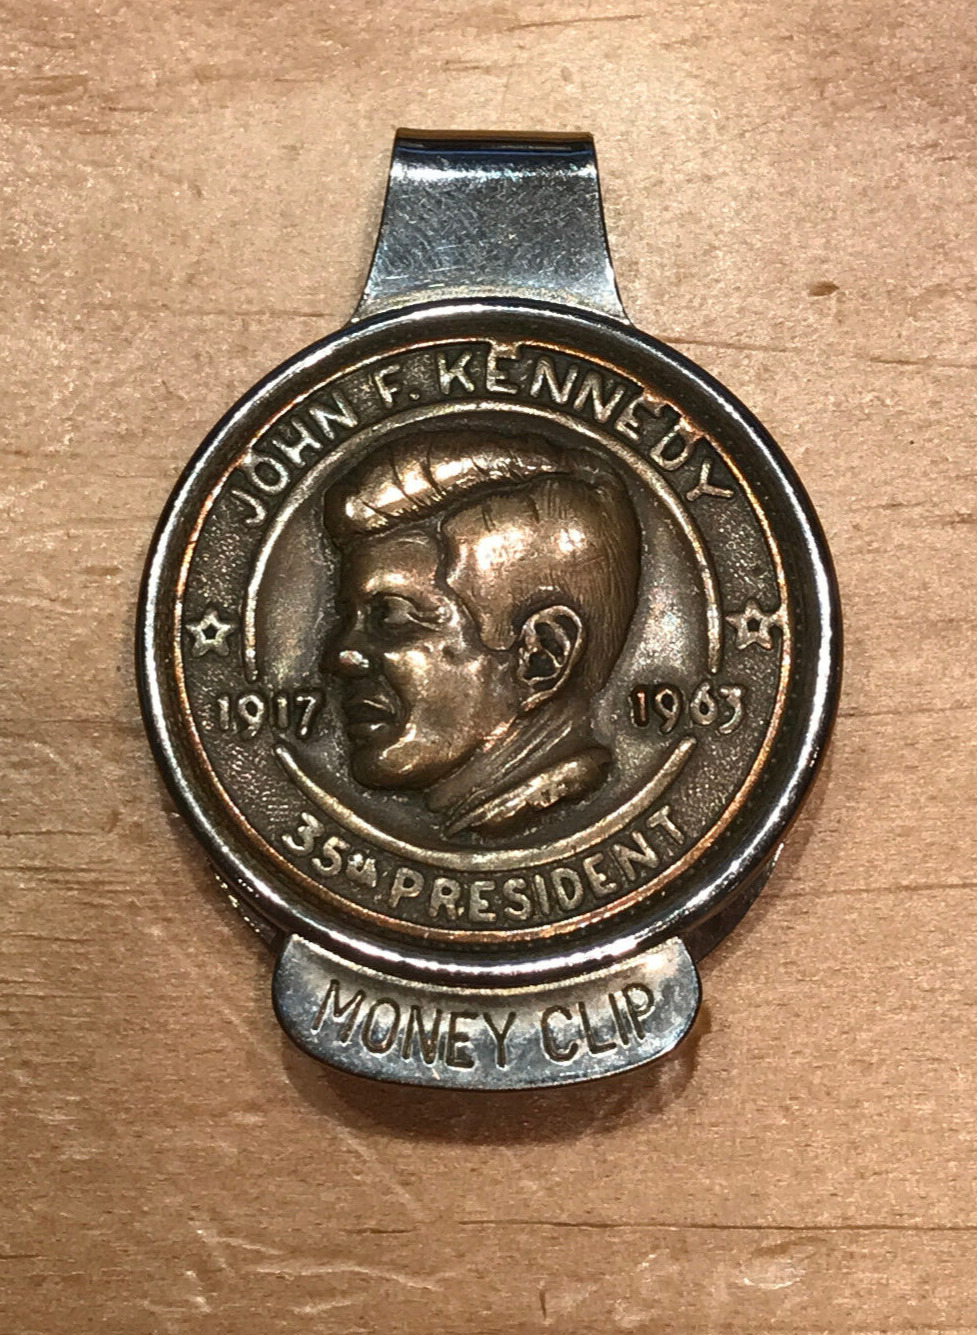 JOHN F. KENNEDY 35th PRESIDENT MONEY CLIP JFK - ELCO MAKER'S MARK ON REVERSE